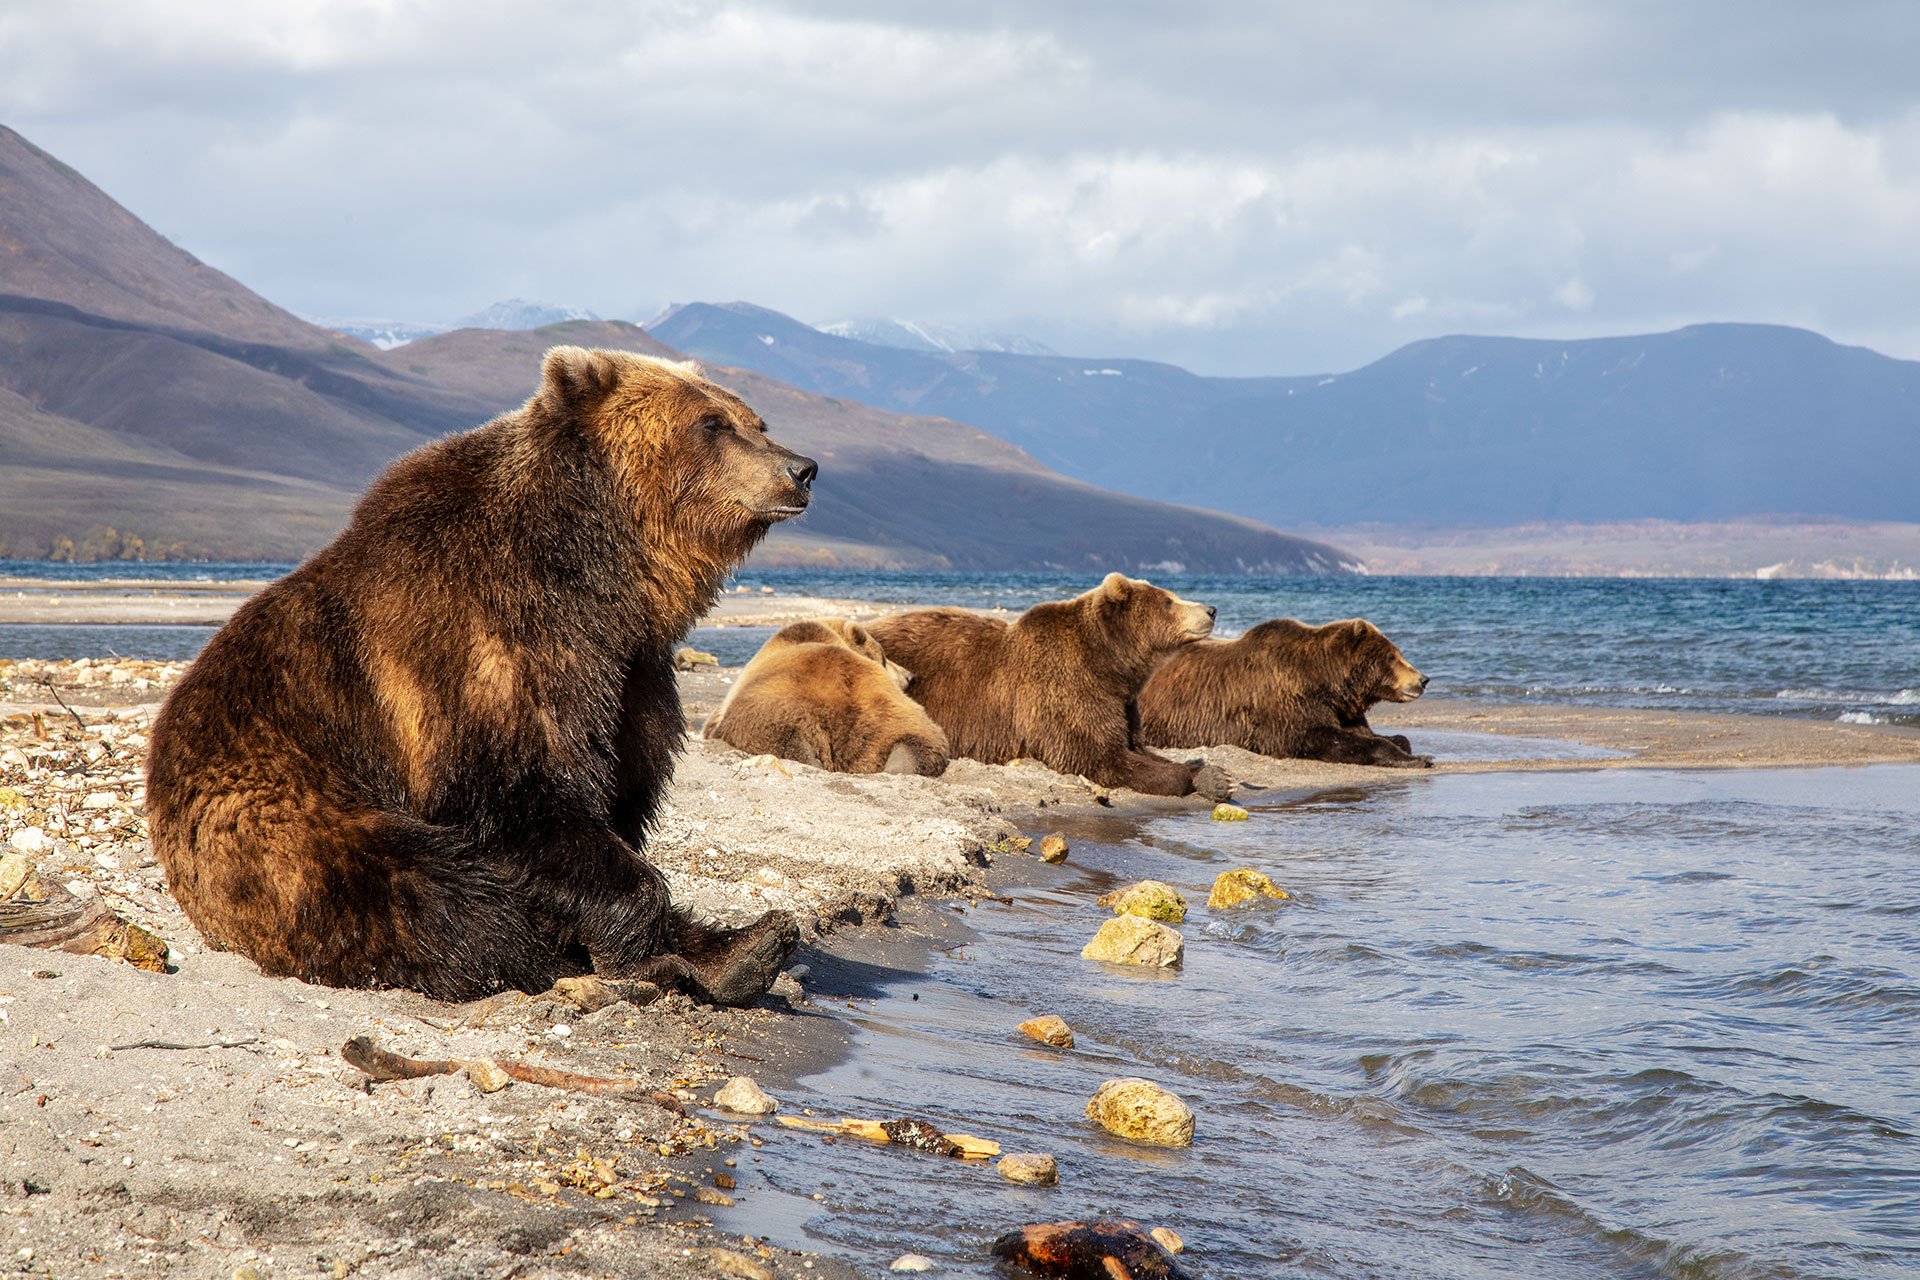 Описание фотографии камчатский бурый медведь